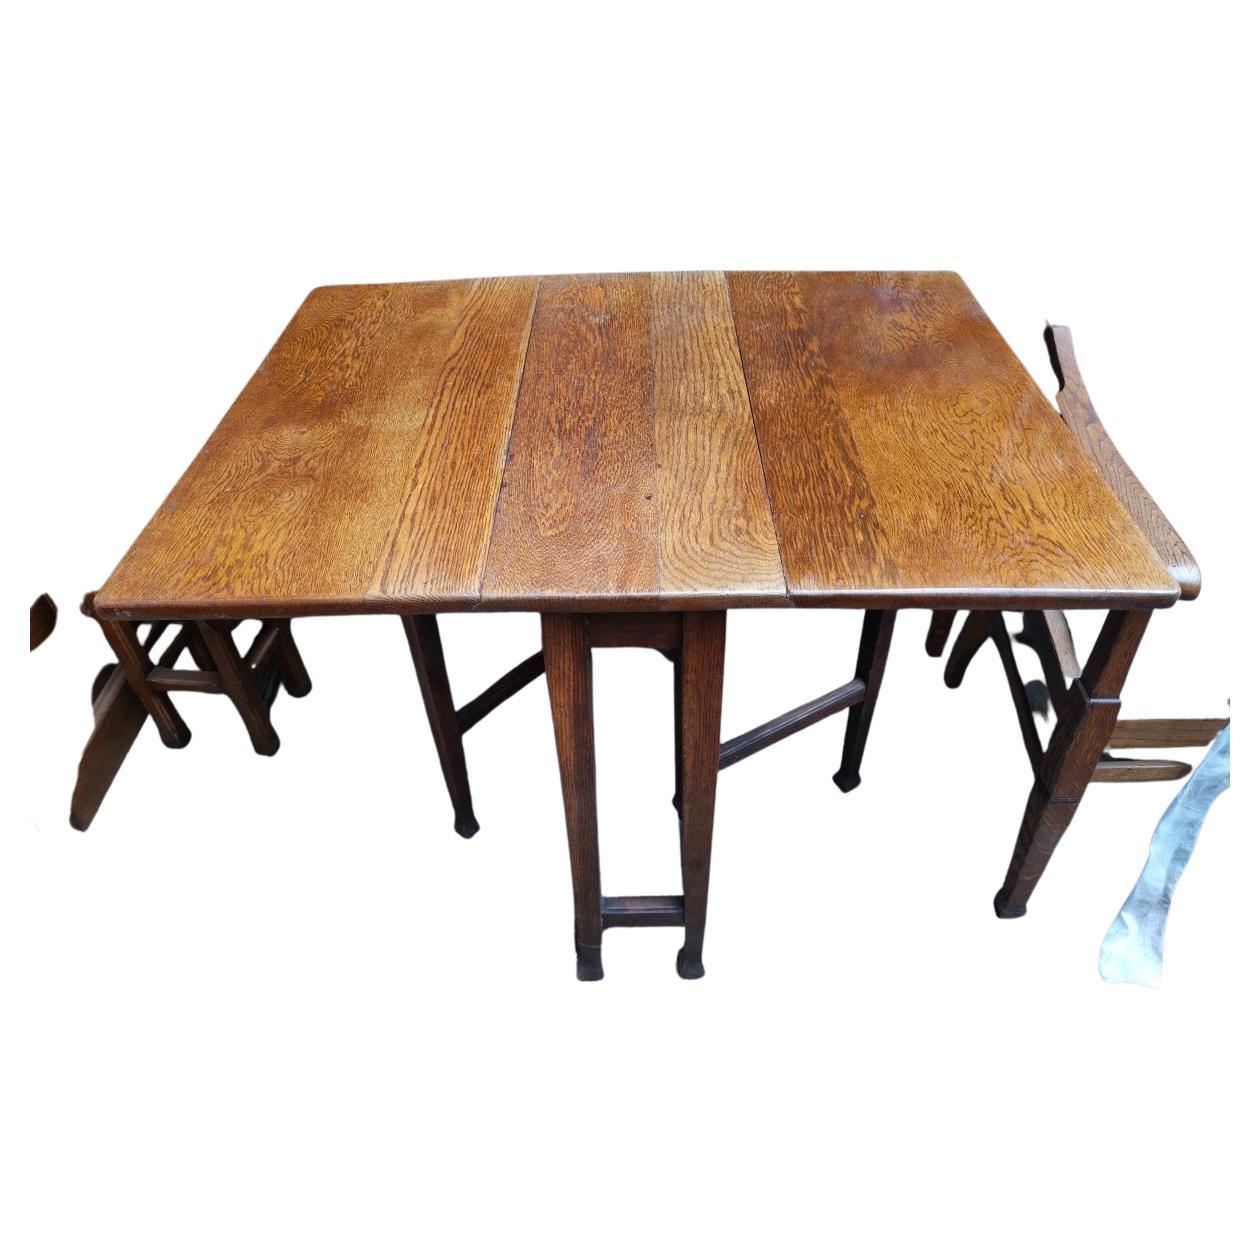 Une table de salle à manger ou de Pembroke en chêne de bonne qualité, de style Arts & Crafts anglais, avec un grain sauvage sur le dessus et des pieds carrés effilés. Très robuste.
Une fois fermée, elle se range dans un petit espace et prend très